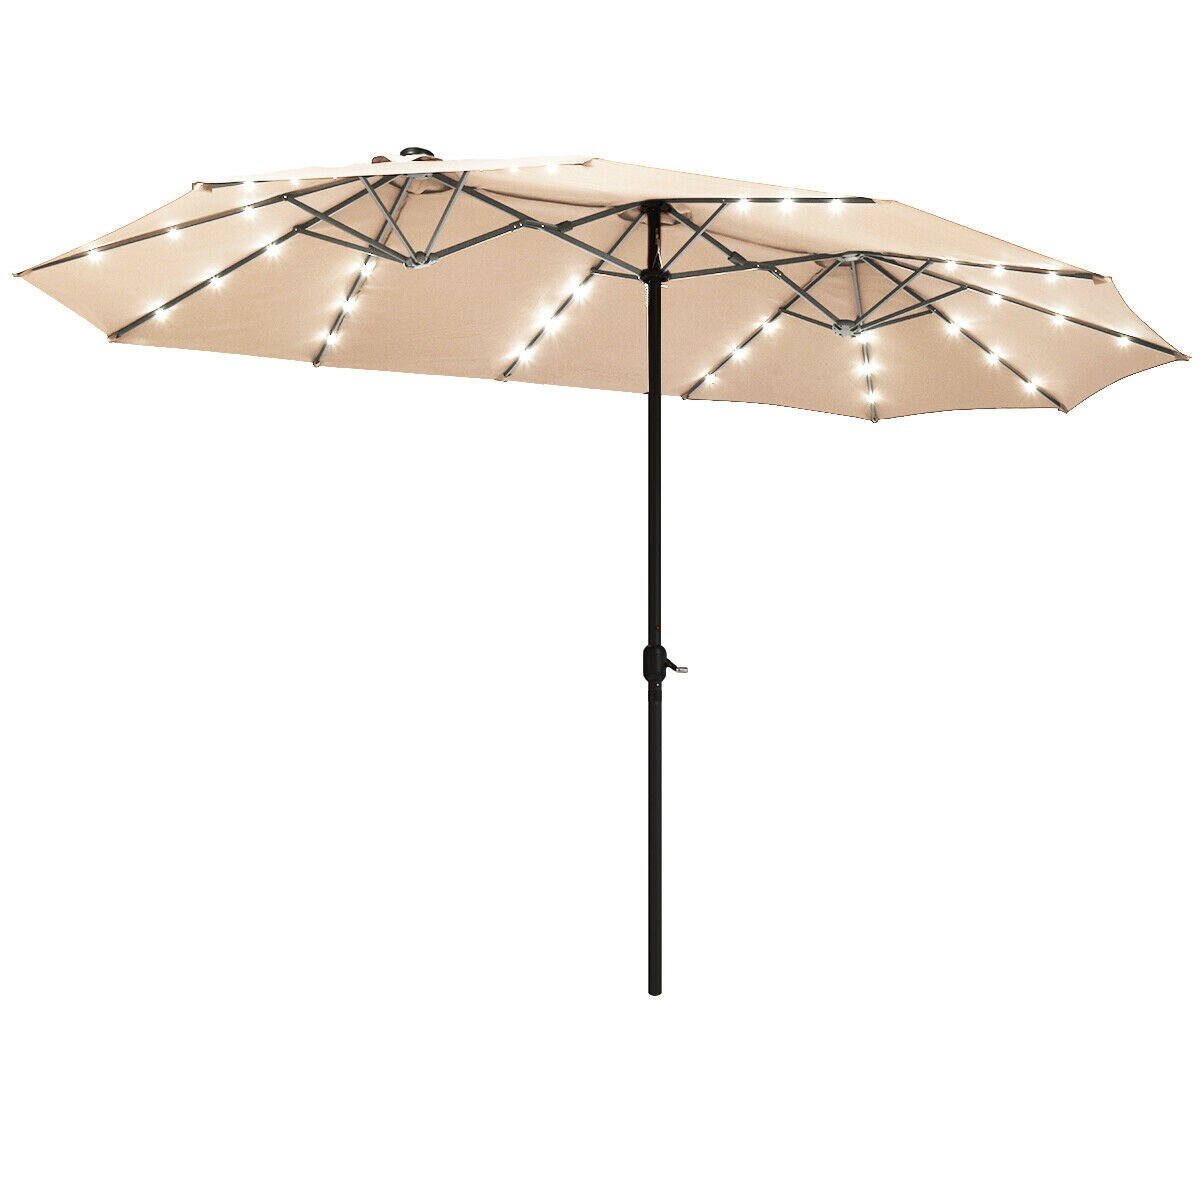 durable beach umbrella